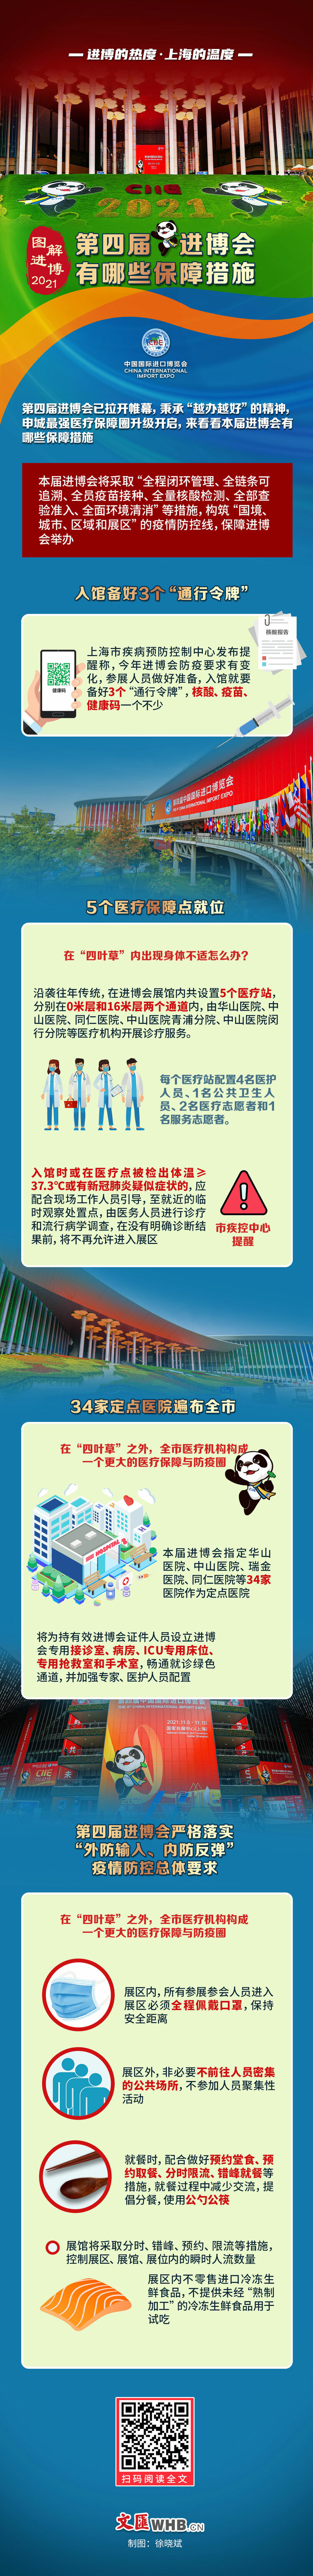 图解进博｜上海精心布局的进博会服务保障工作有哪些？【进博的热度上海的温度】